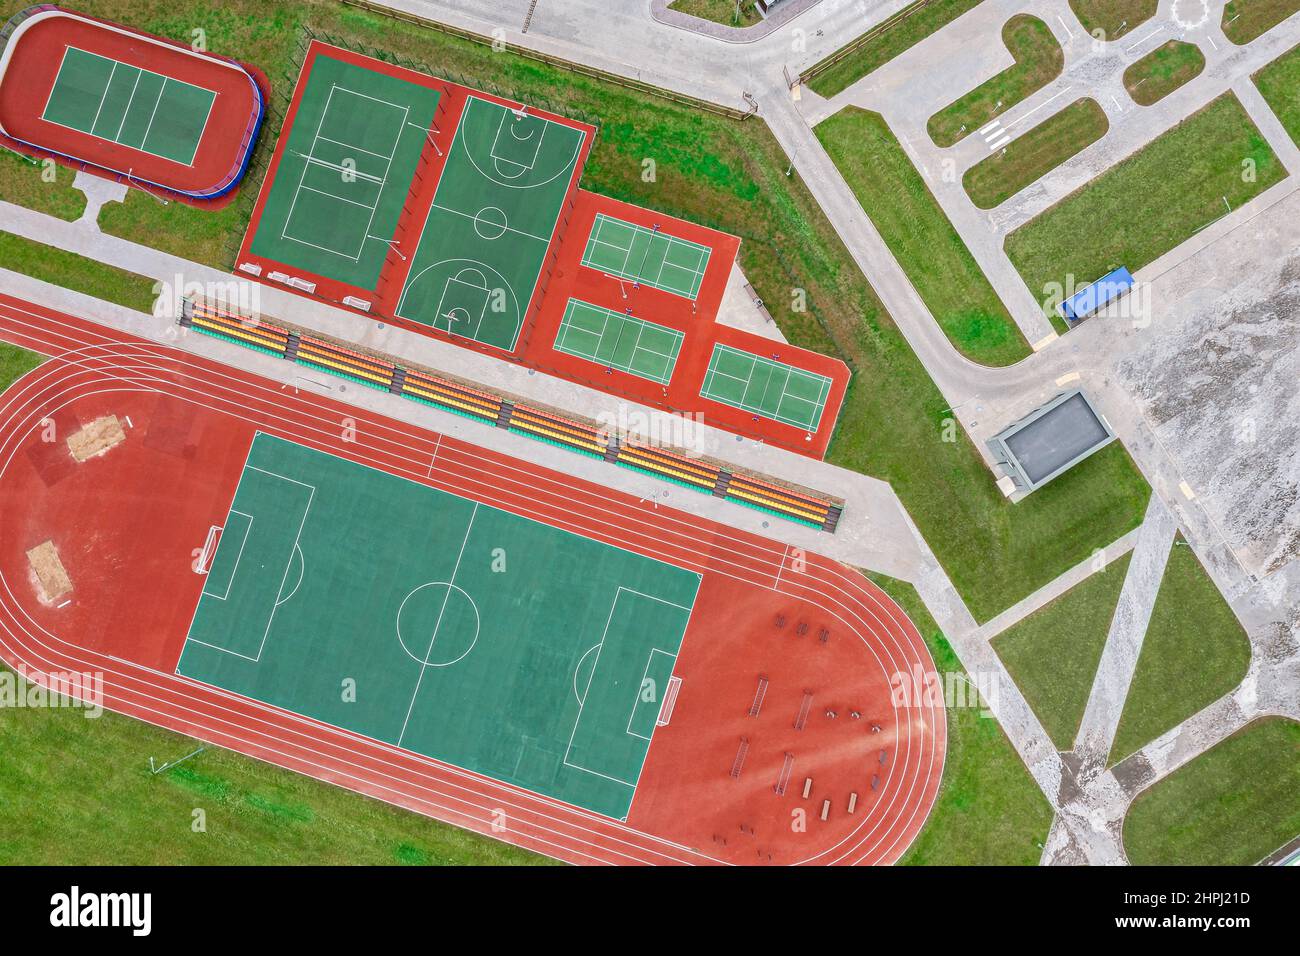 Schulsportplatz mit Fußballstadion, Joggingstrecken. Basketball, Volleyball, Tennisplätze. Luftbild, Draufsicht. Stockfoto